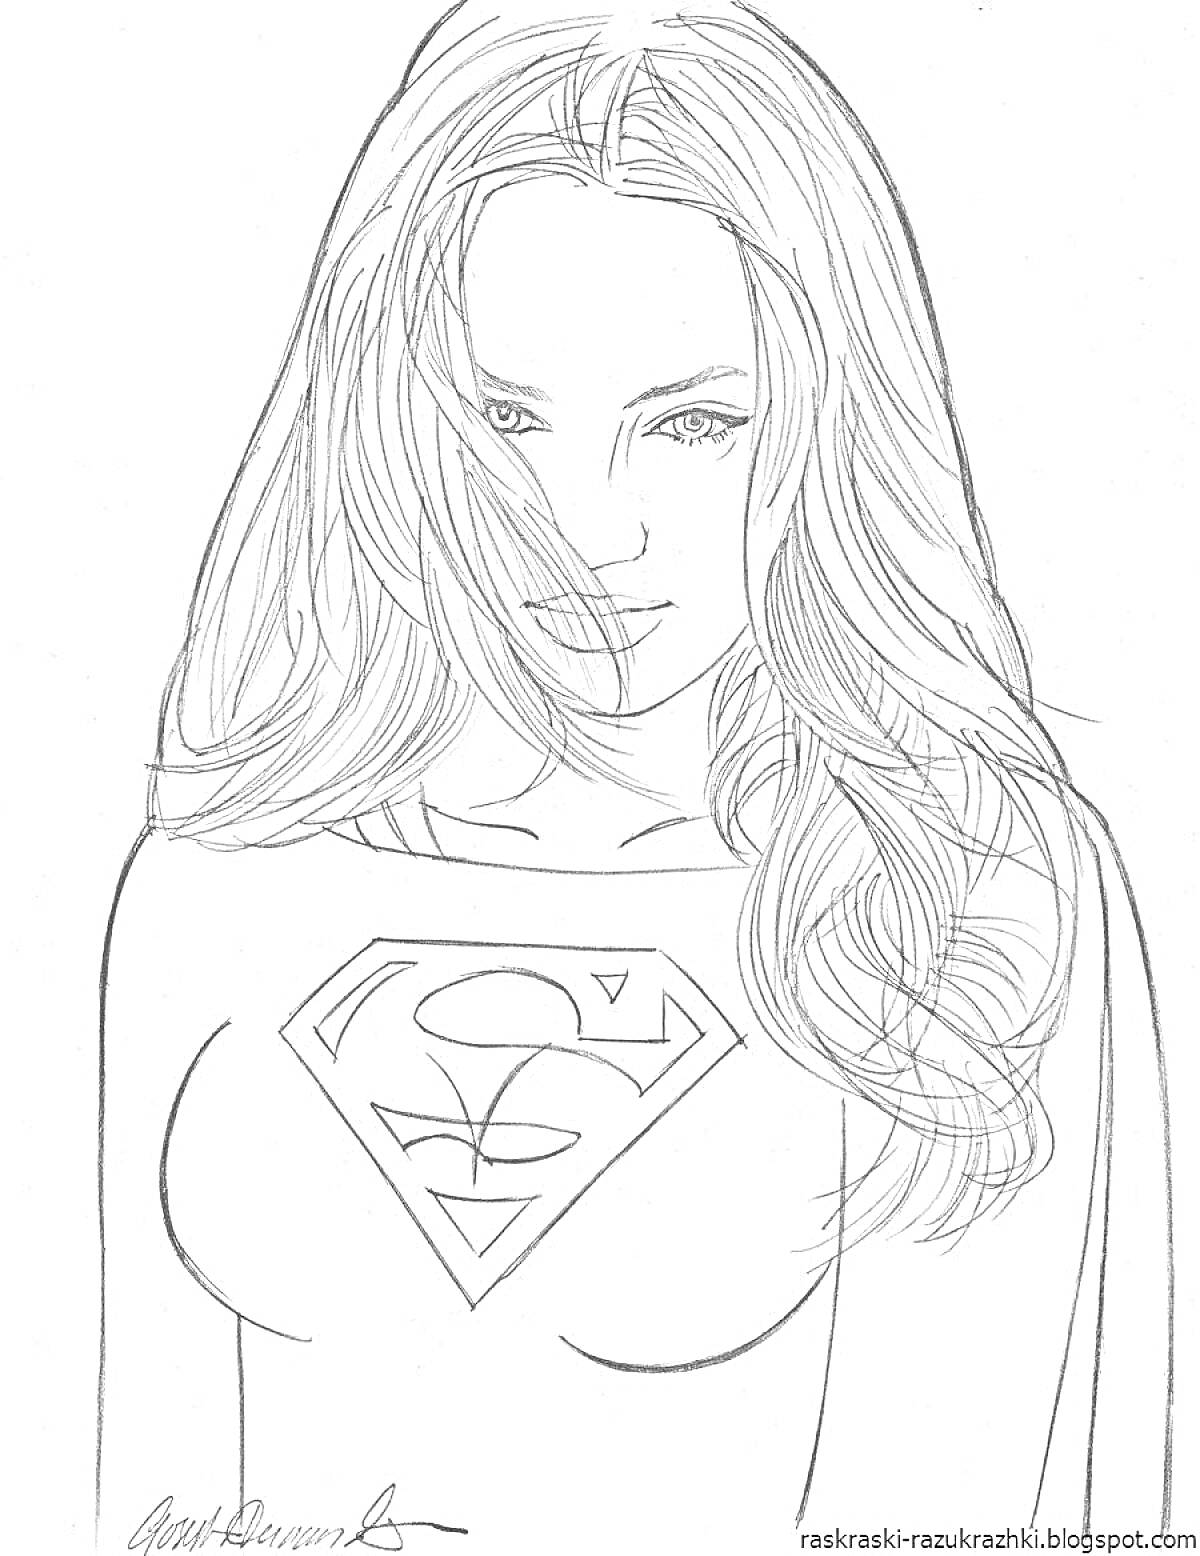 Раскраска Изображение девушки с длинными волосами и логотипом супергероя на груди